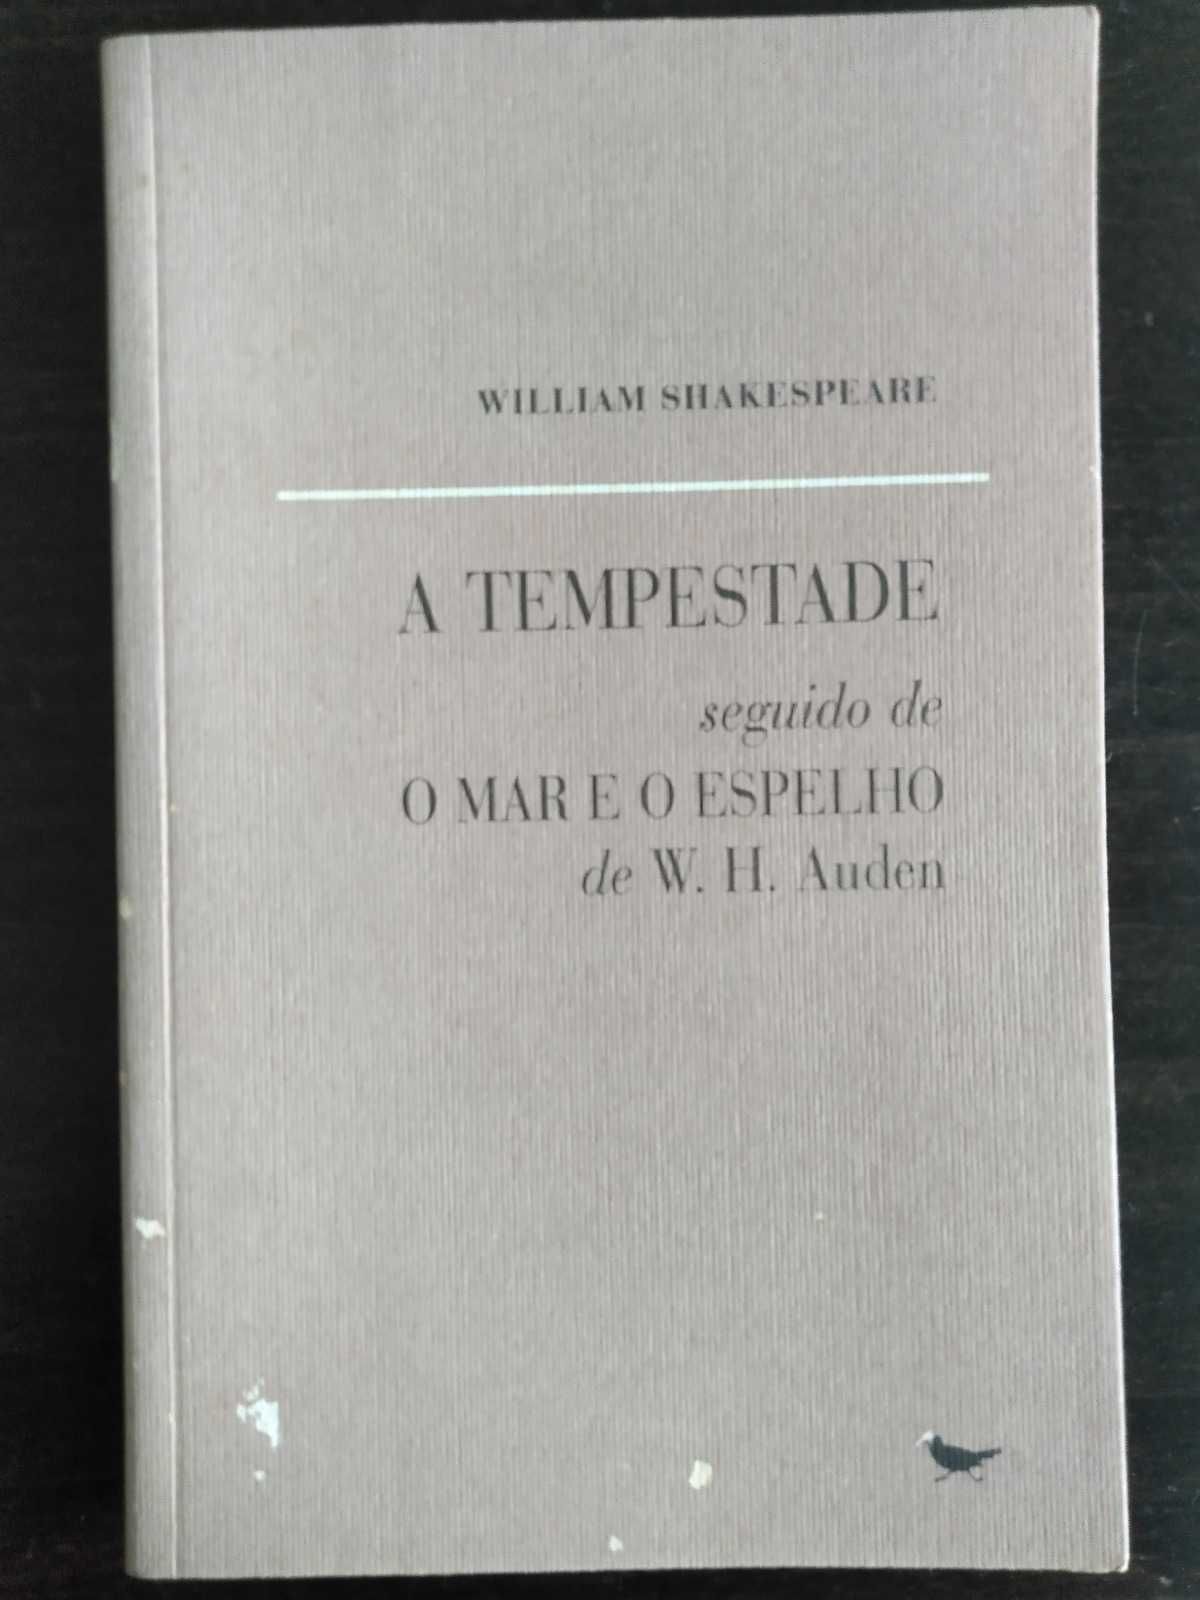 Livro "A tempestade", de William Shakespeare